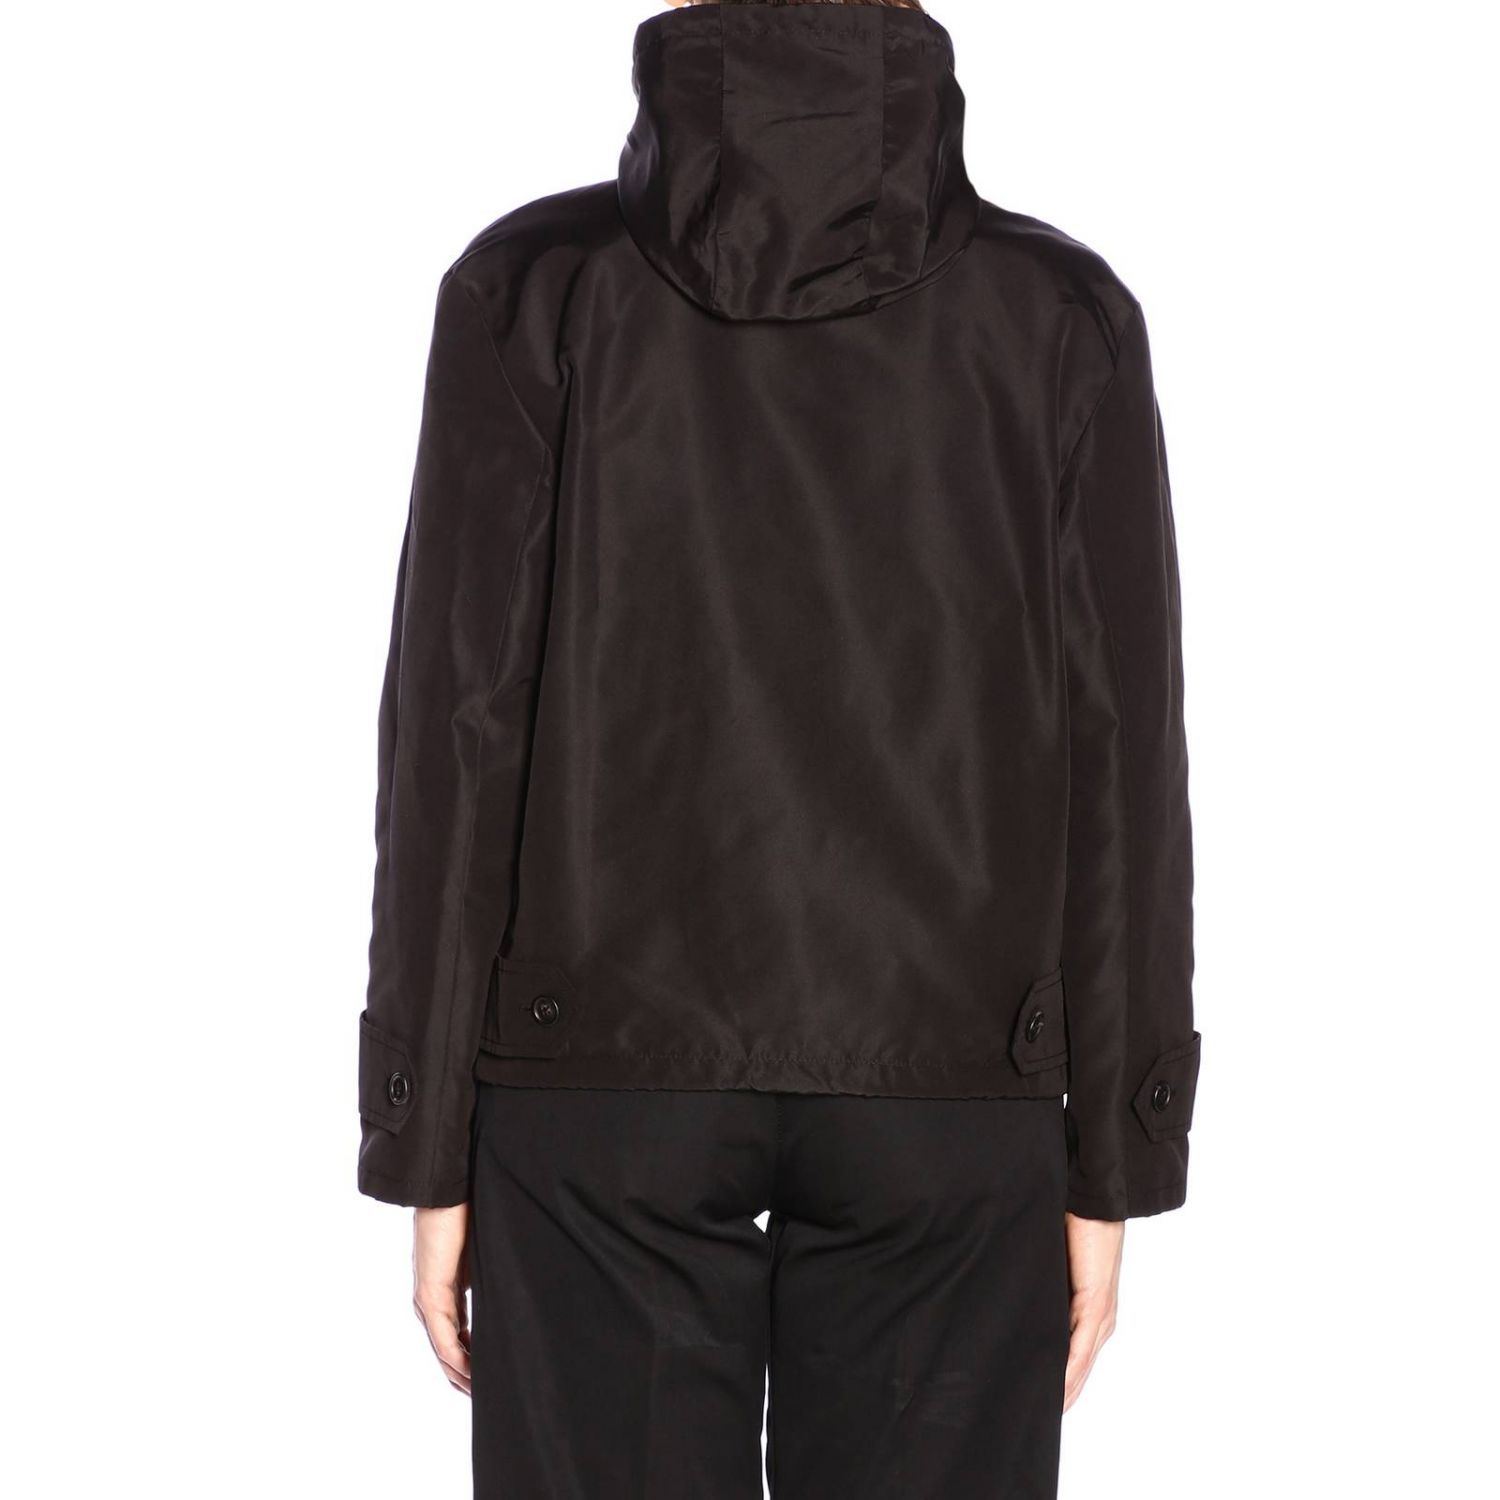 PRADA: jacket for woman - Black | Prada jacket 29X496 B03 online on